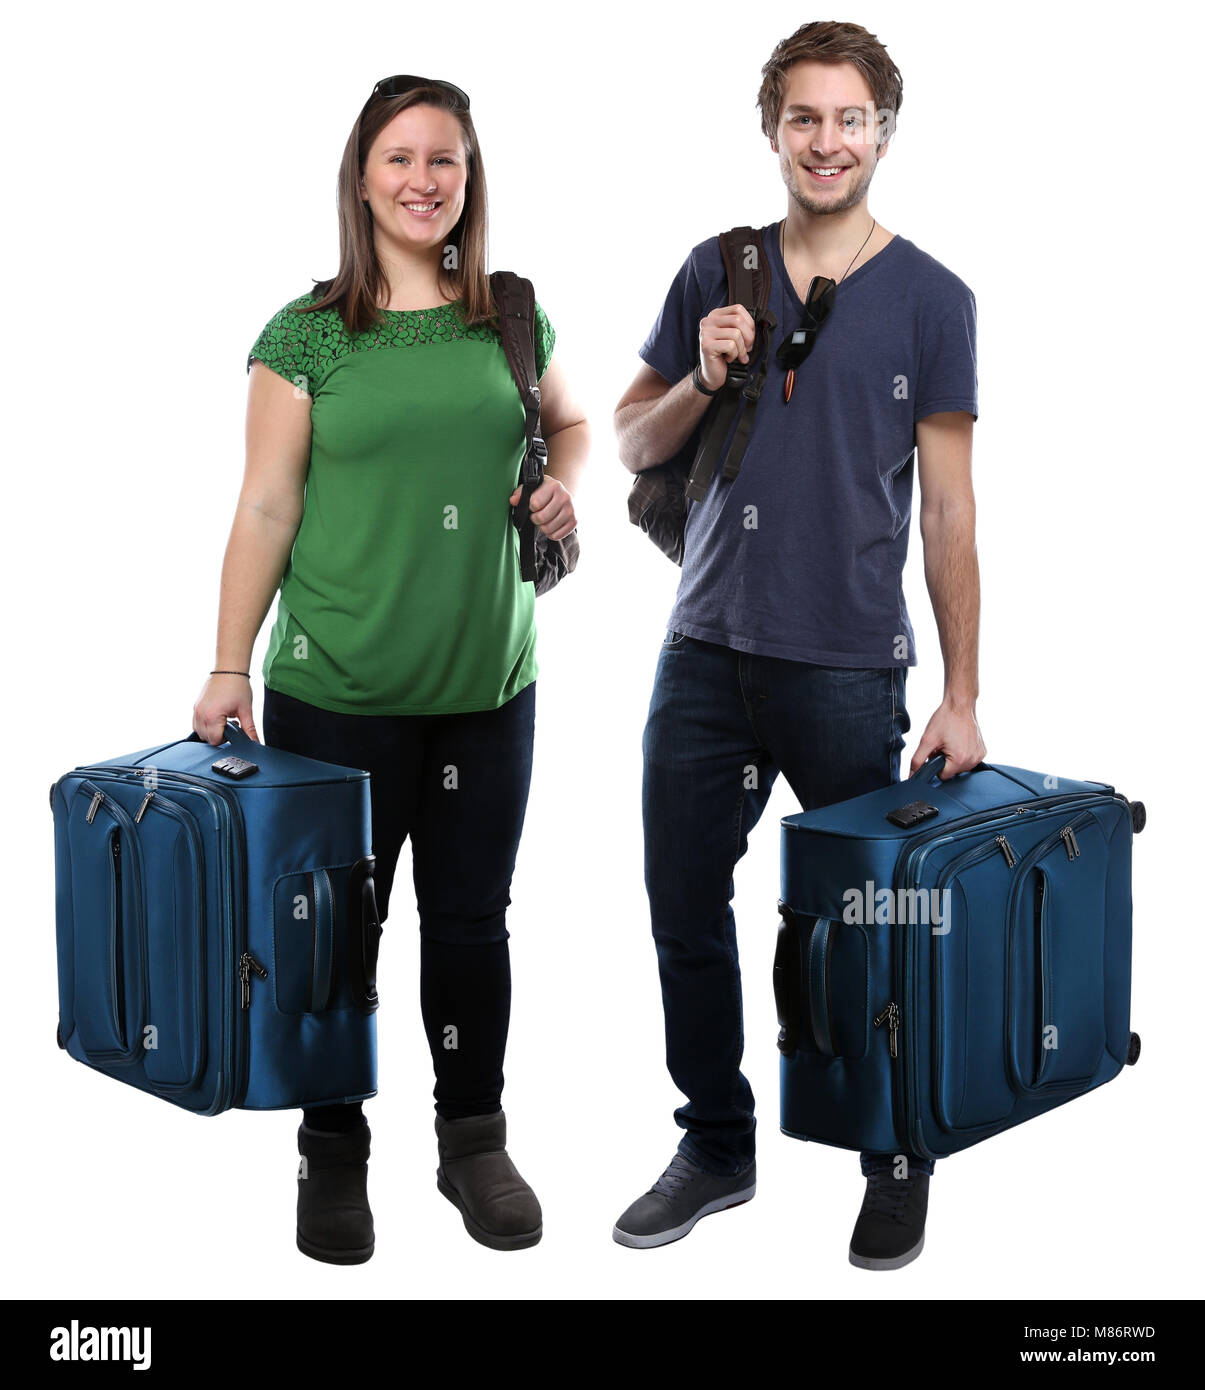 Les jeunes personnes avec bagages voyager locations de vacances smiling isolé sur fond blanc Banque D'Images